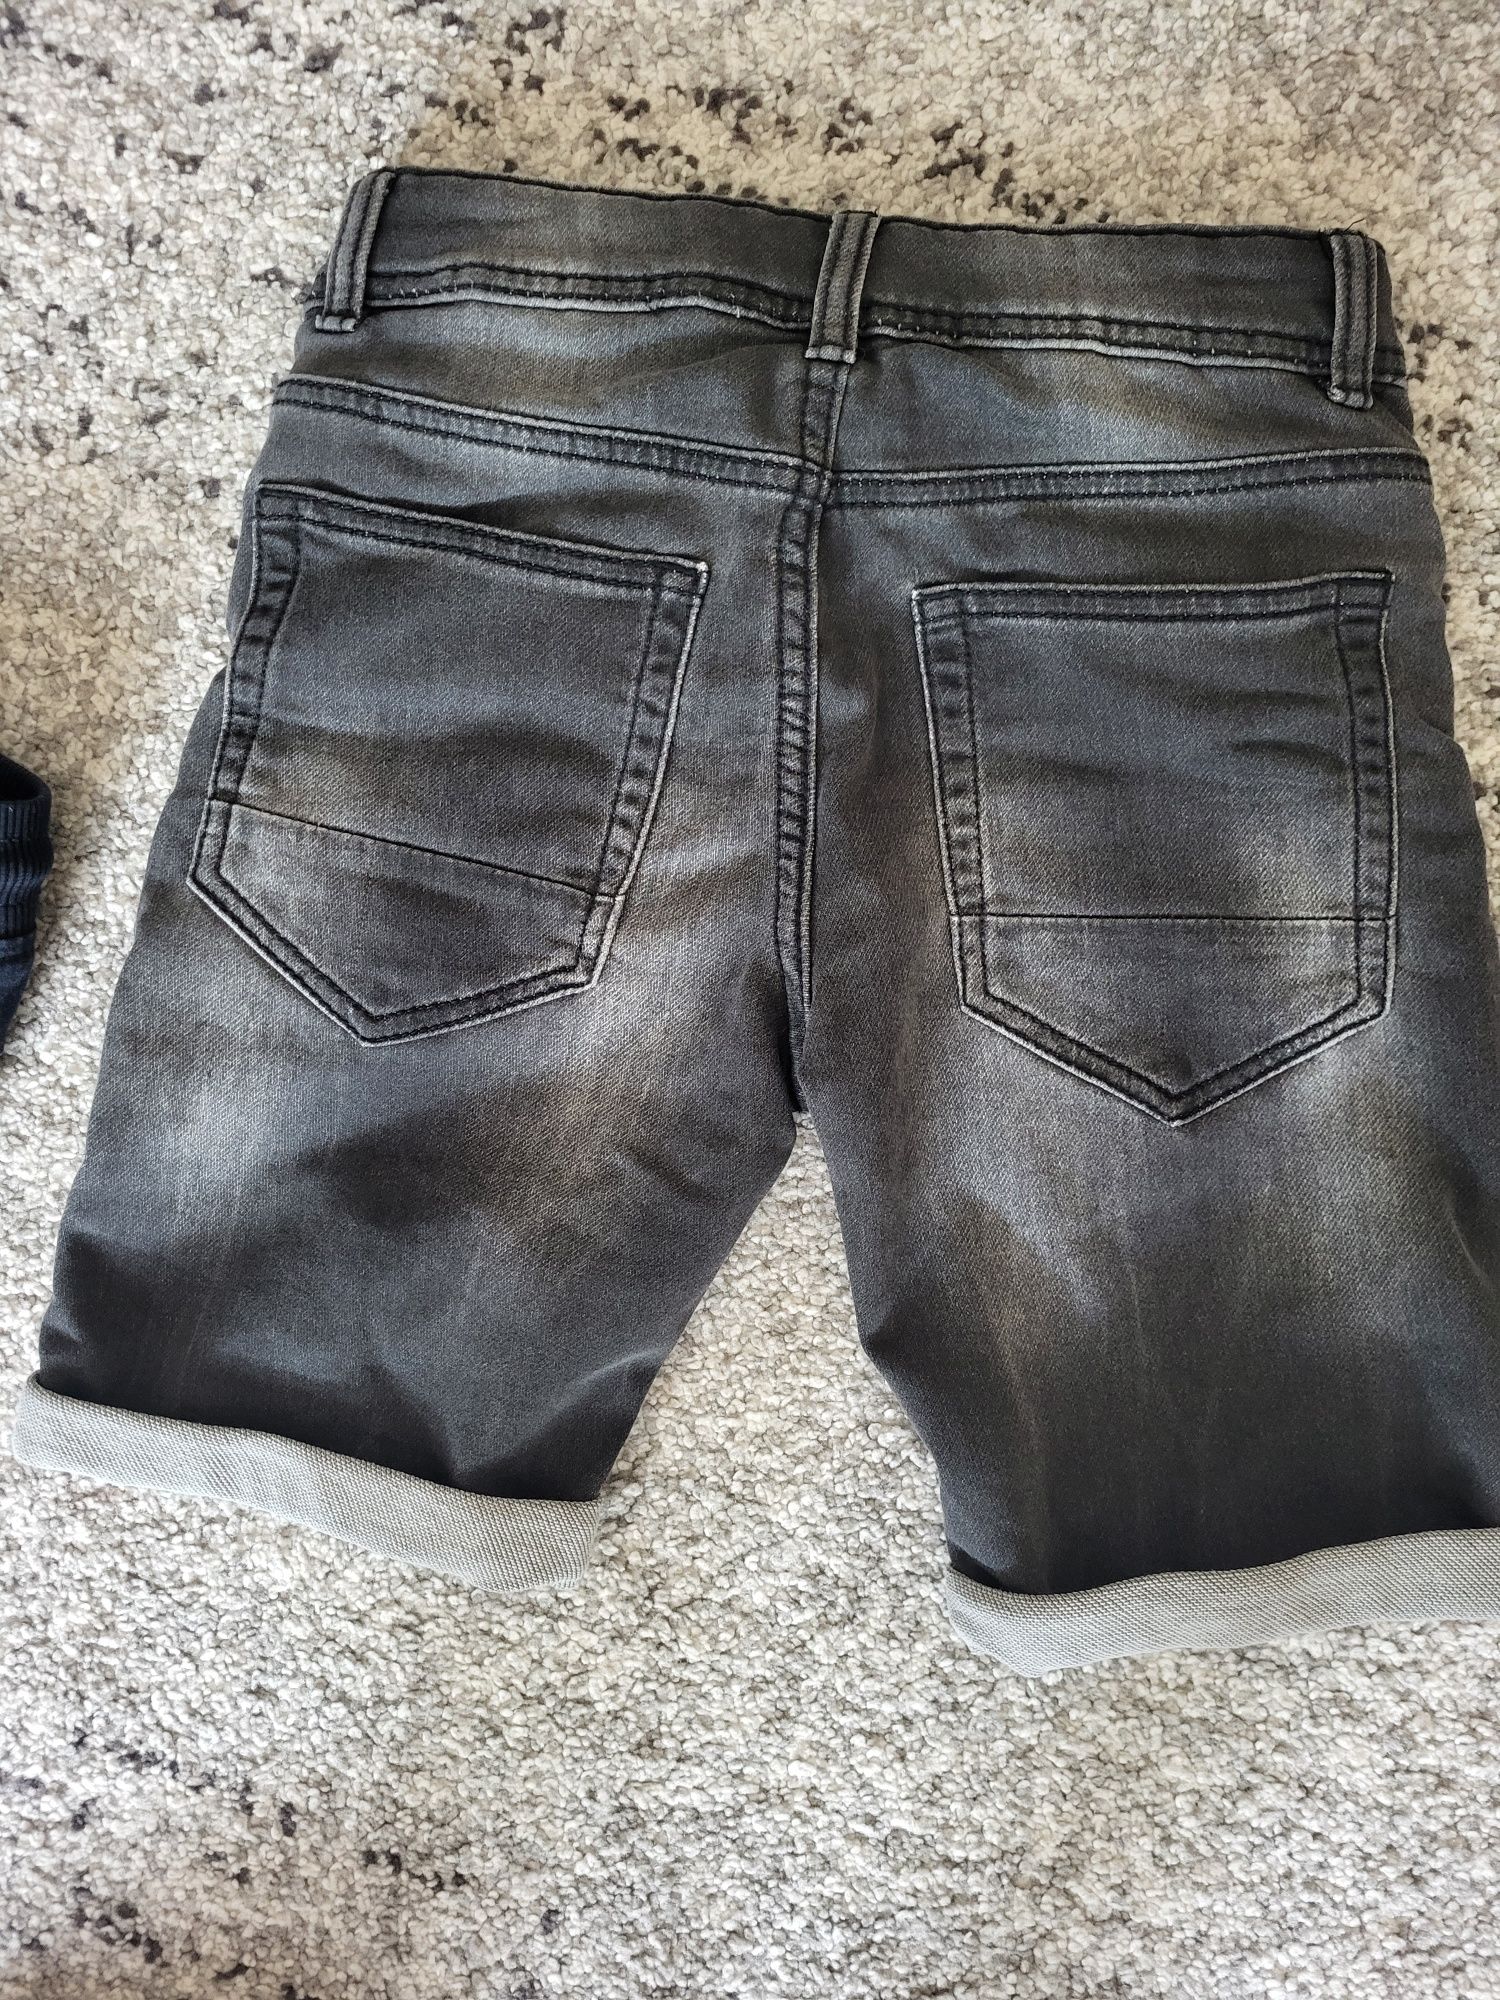 Spodenki jeansowe chłopięce na rozmiar 134 cm